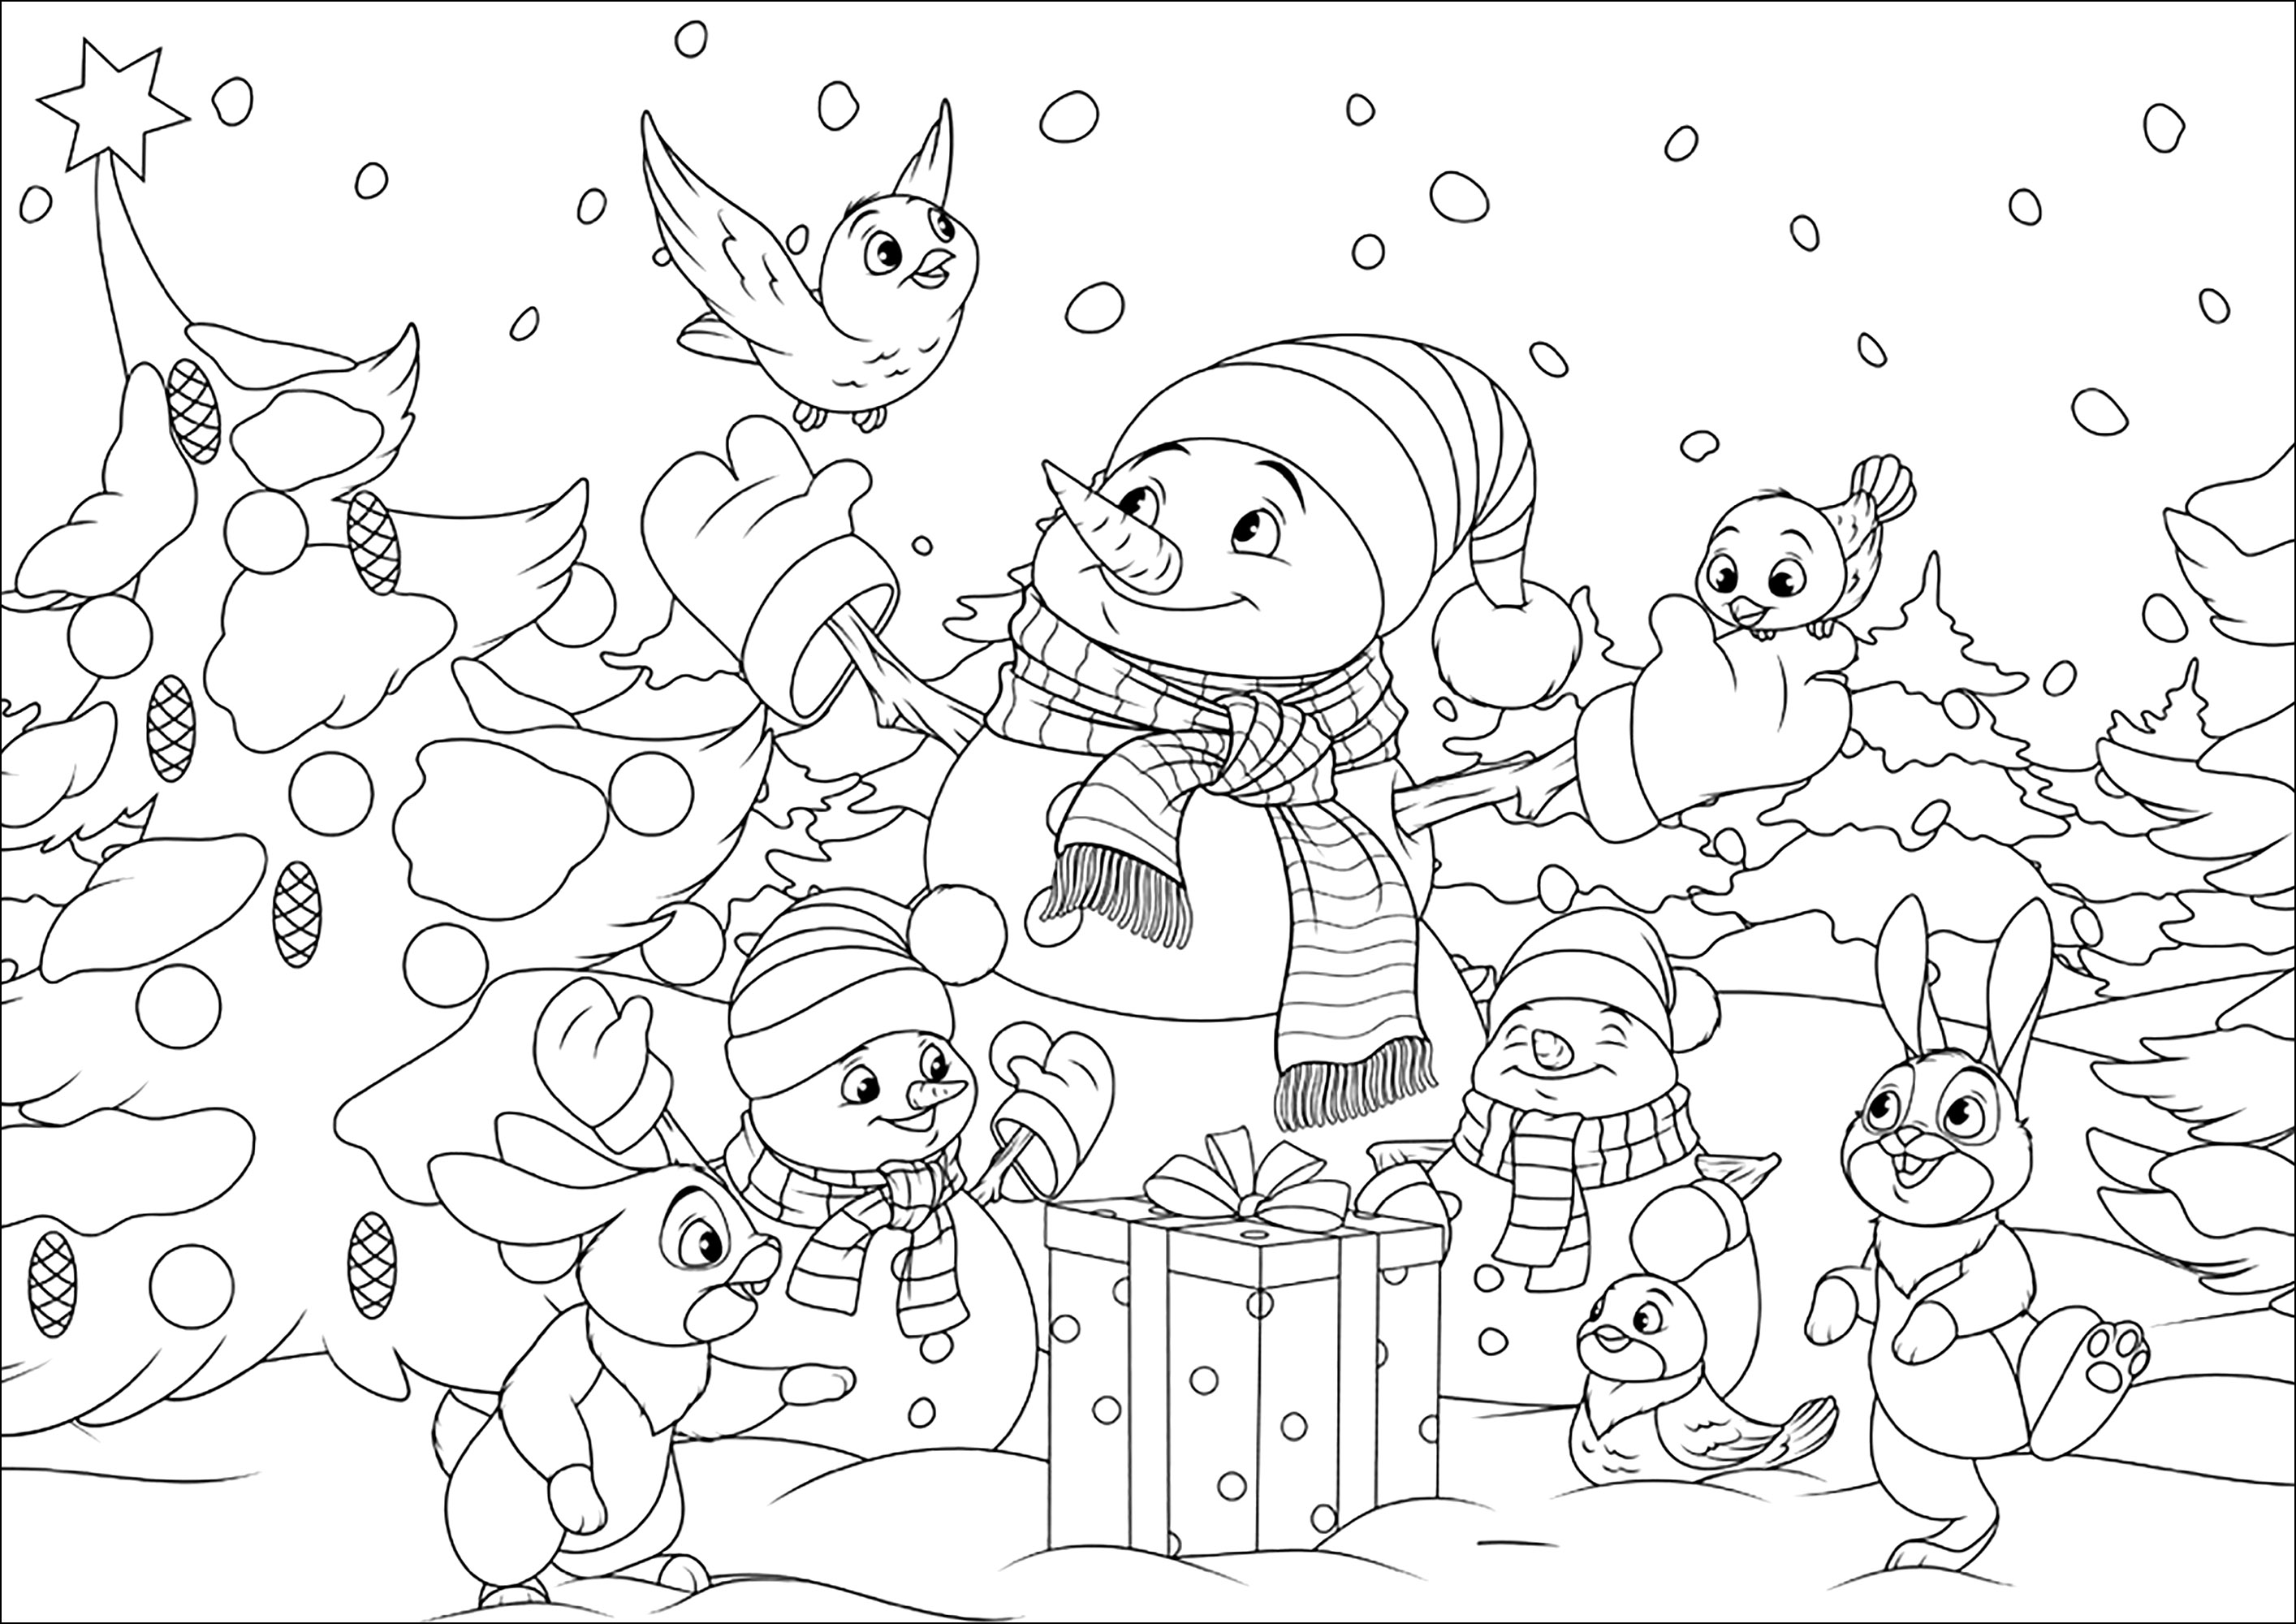 Los muñecos de nieve y sus amigos del bosque. Colorea estos bonitos muñecos de nieve y sus amigos conejitos y pajaritos en un paisaje navideño nevado, Origen : 123rf   Artista : Andrey1978